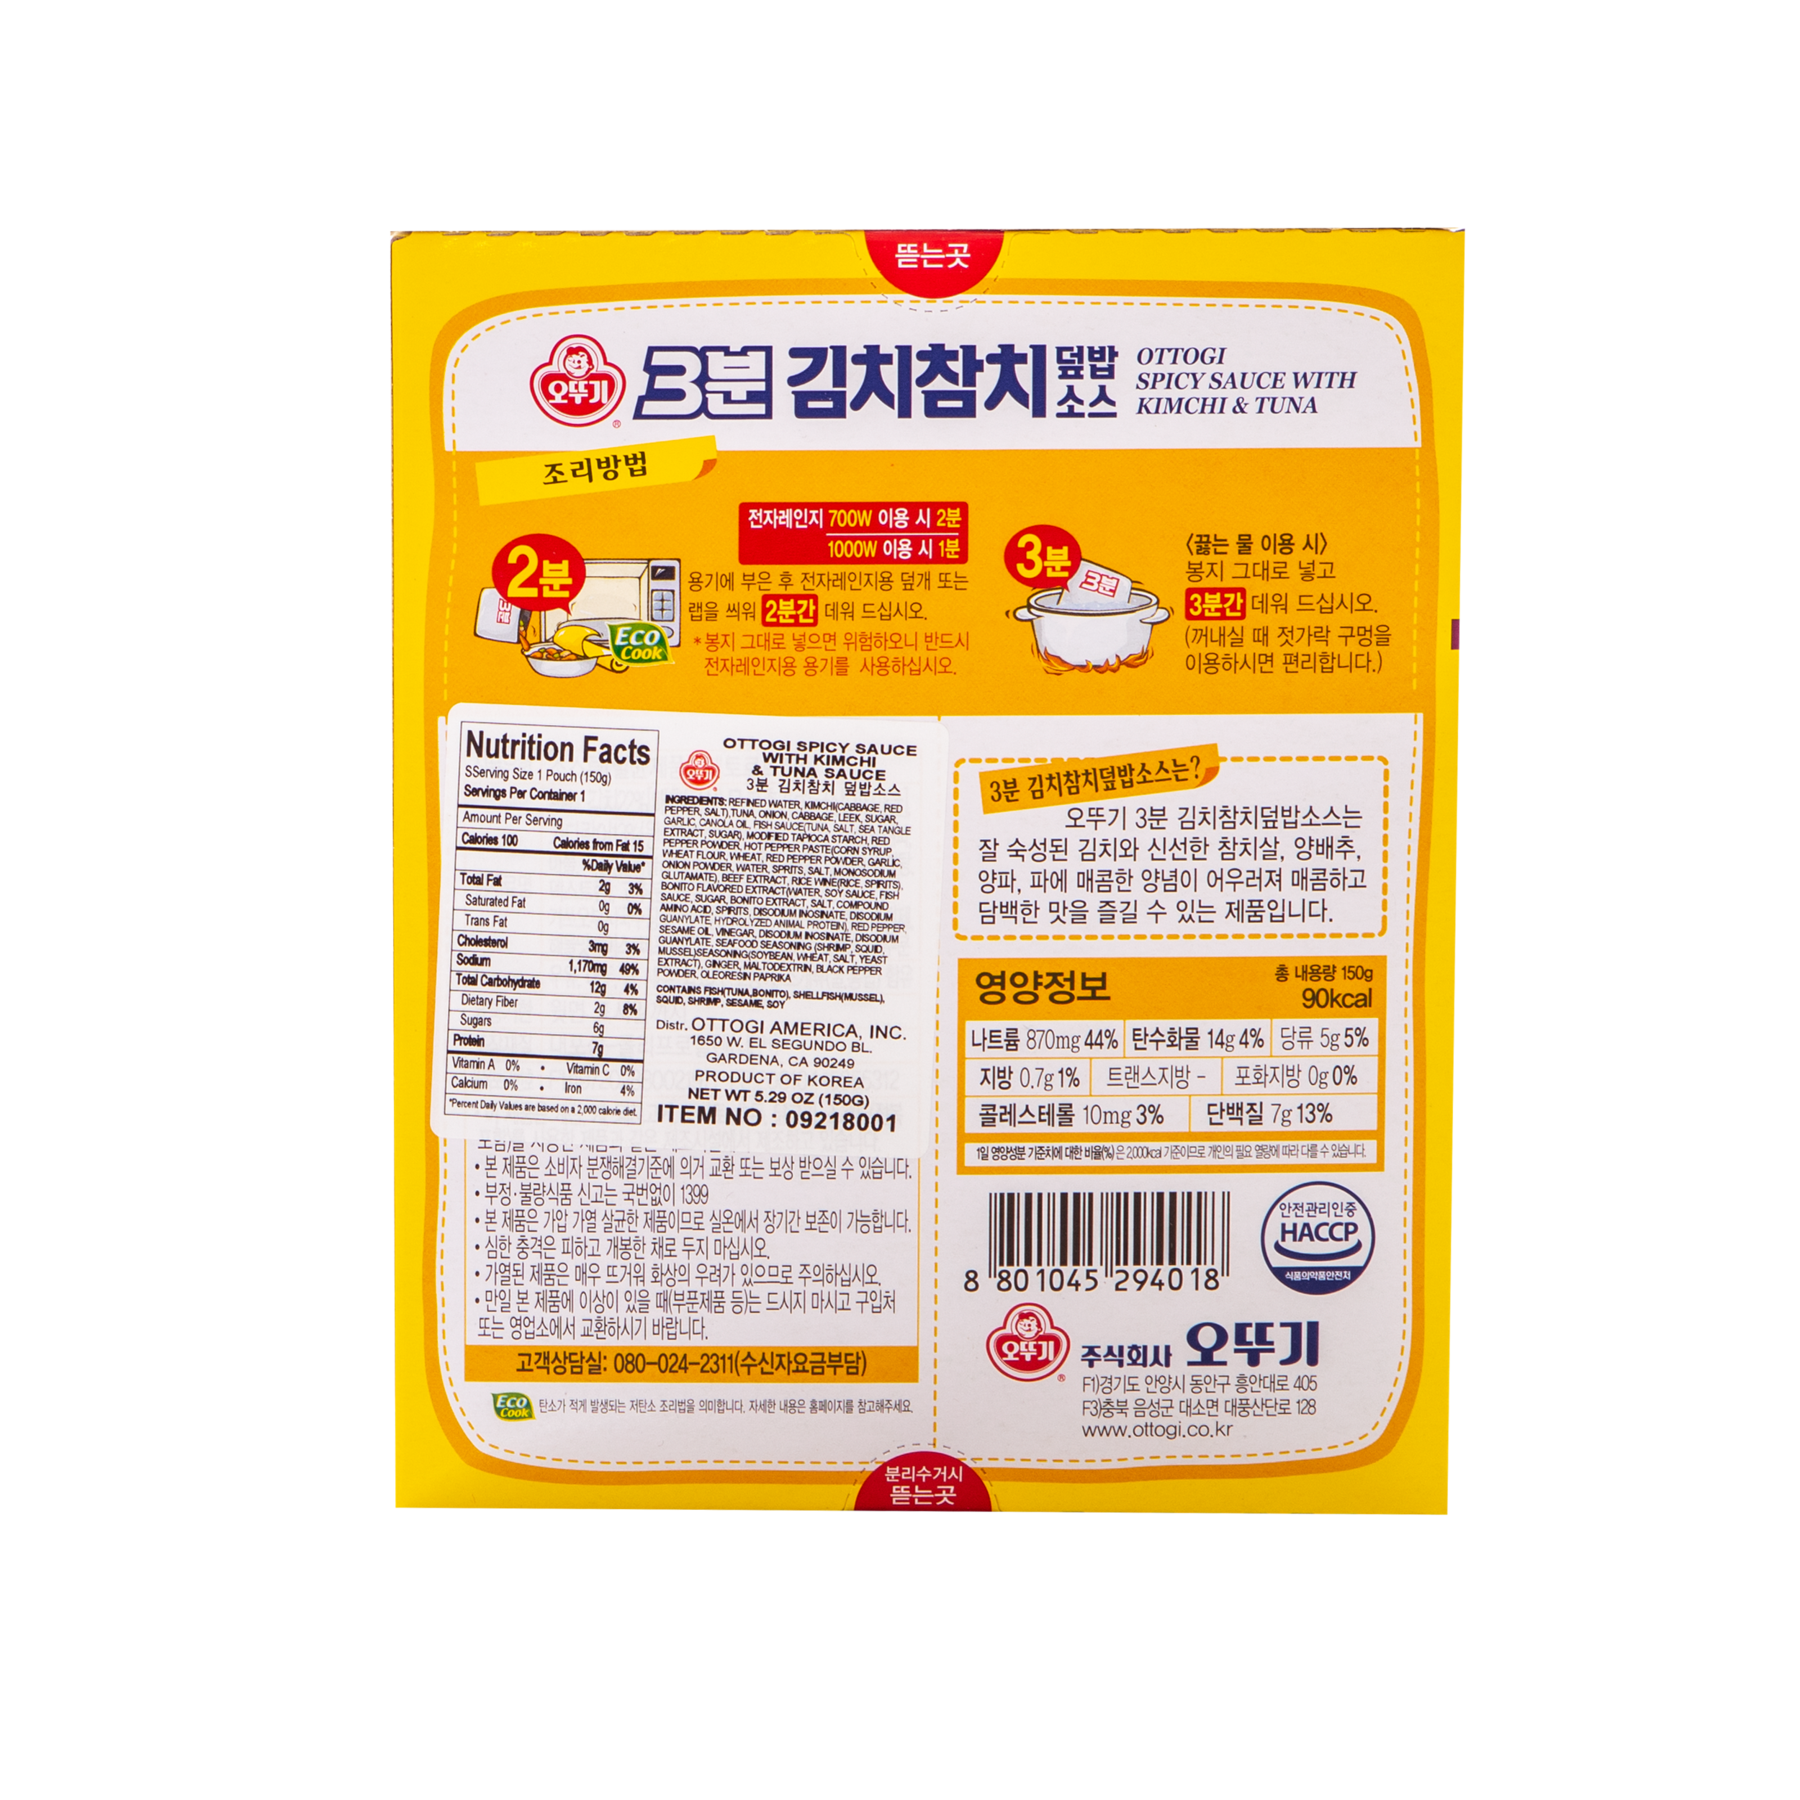 3 Min. Kimchi & Tuna Topping Sauce 150g